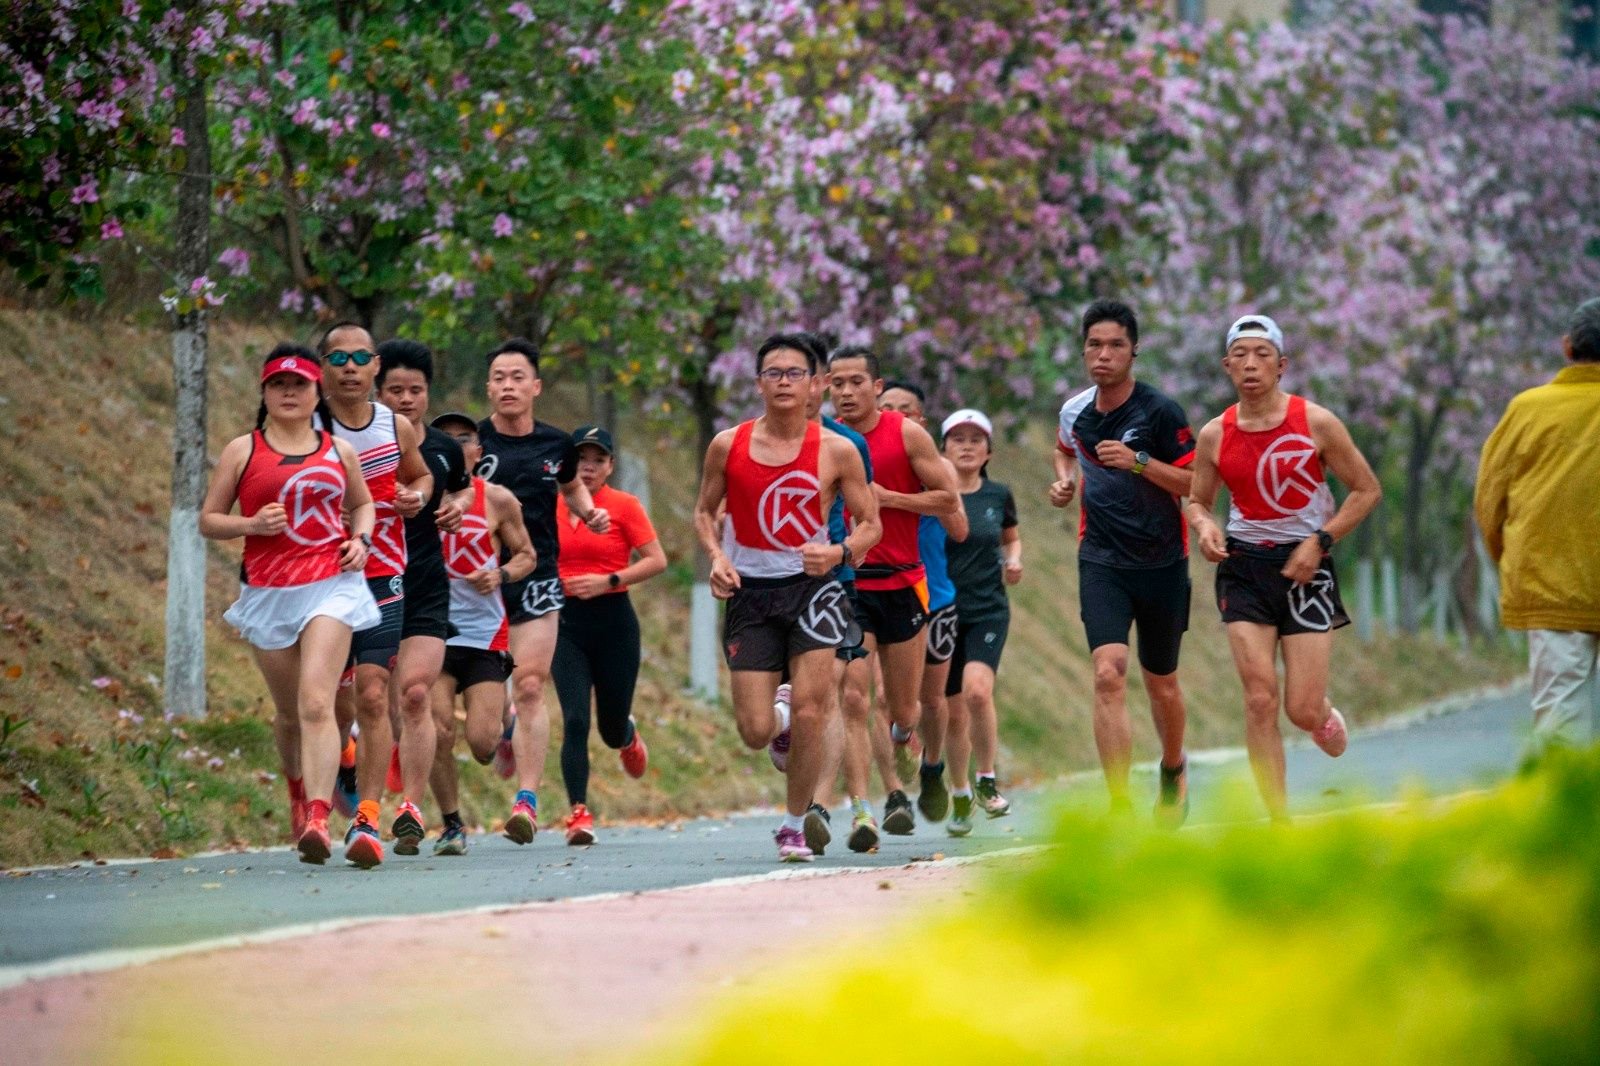 跑步爱好者在广西梧州市玫瑰湖公园跑道上跑步运动锻炼。（图片由CNSPHOTO提供）